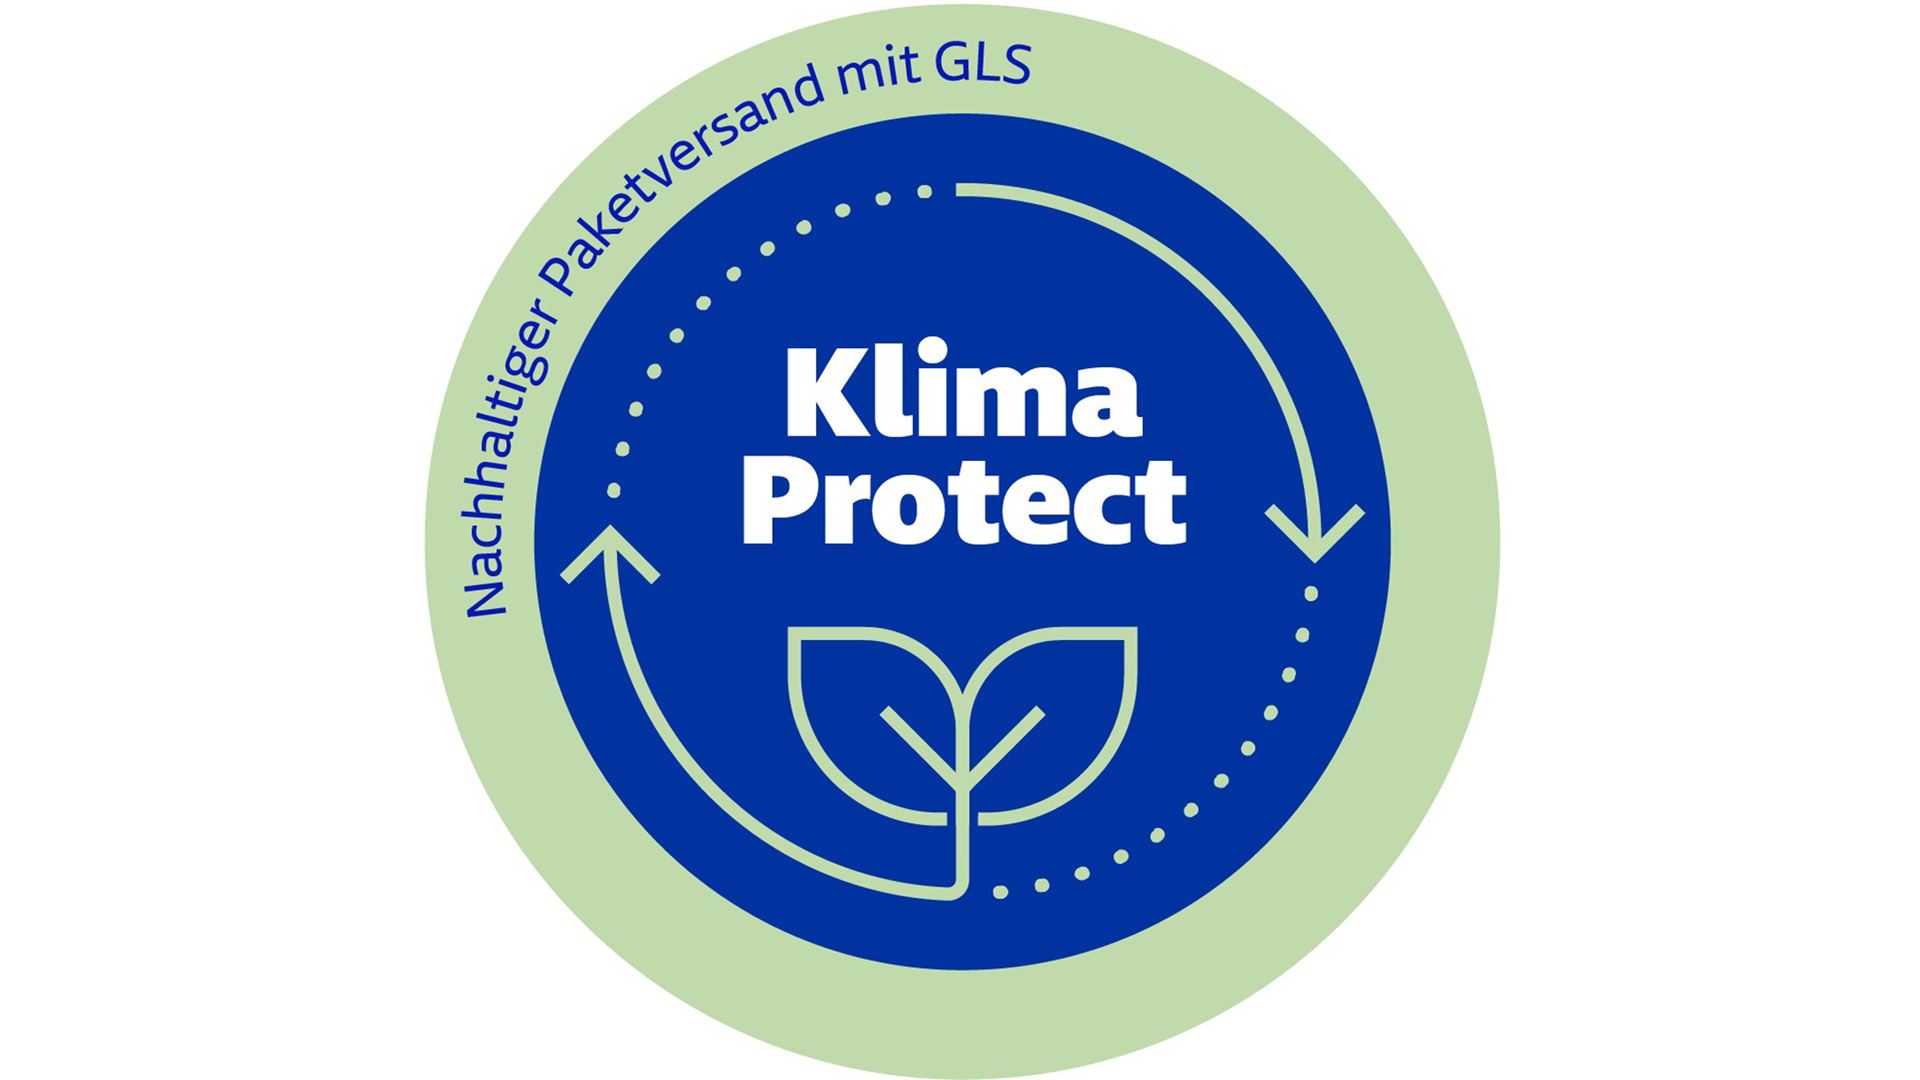 GLS Klima Protect: nachhaltiger Versand mit GLS